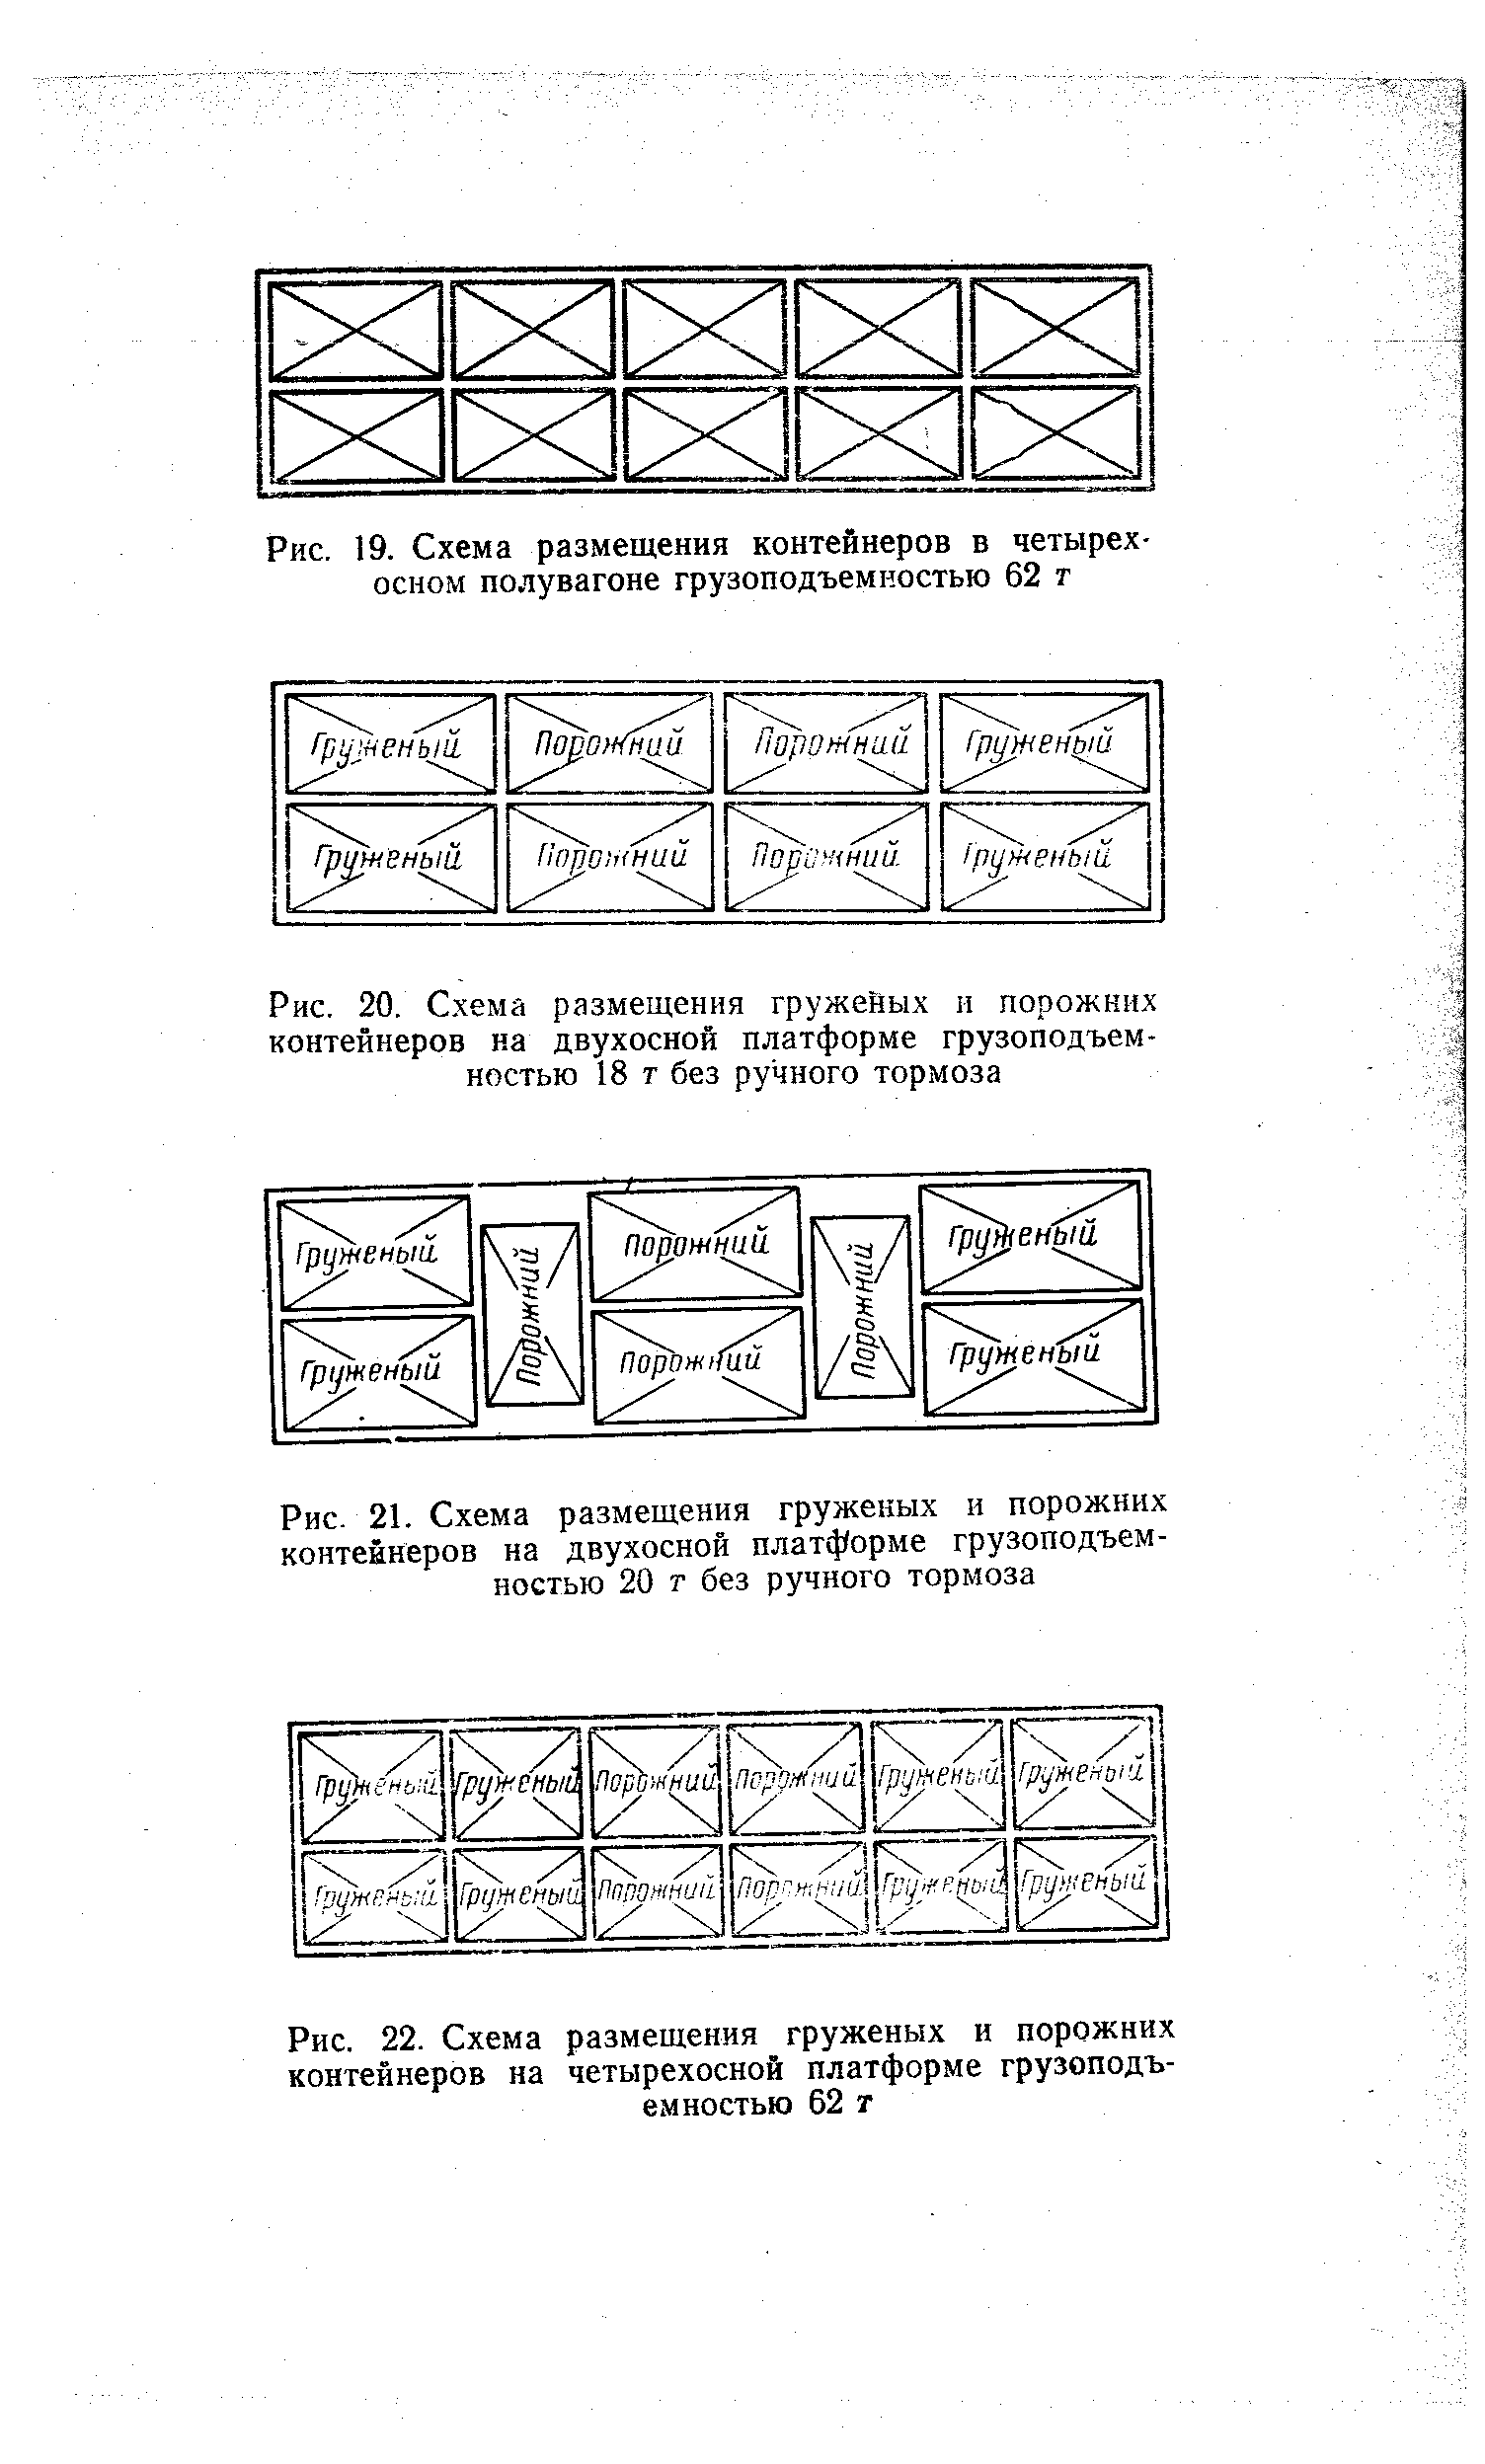 Рис. 22. Схема размещения груженых и порожних контейнеров на четырехосной платформе грузоподъемностью 62 т
